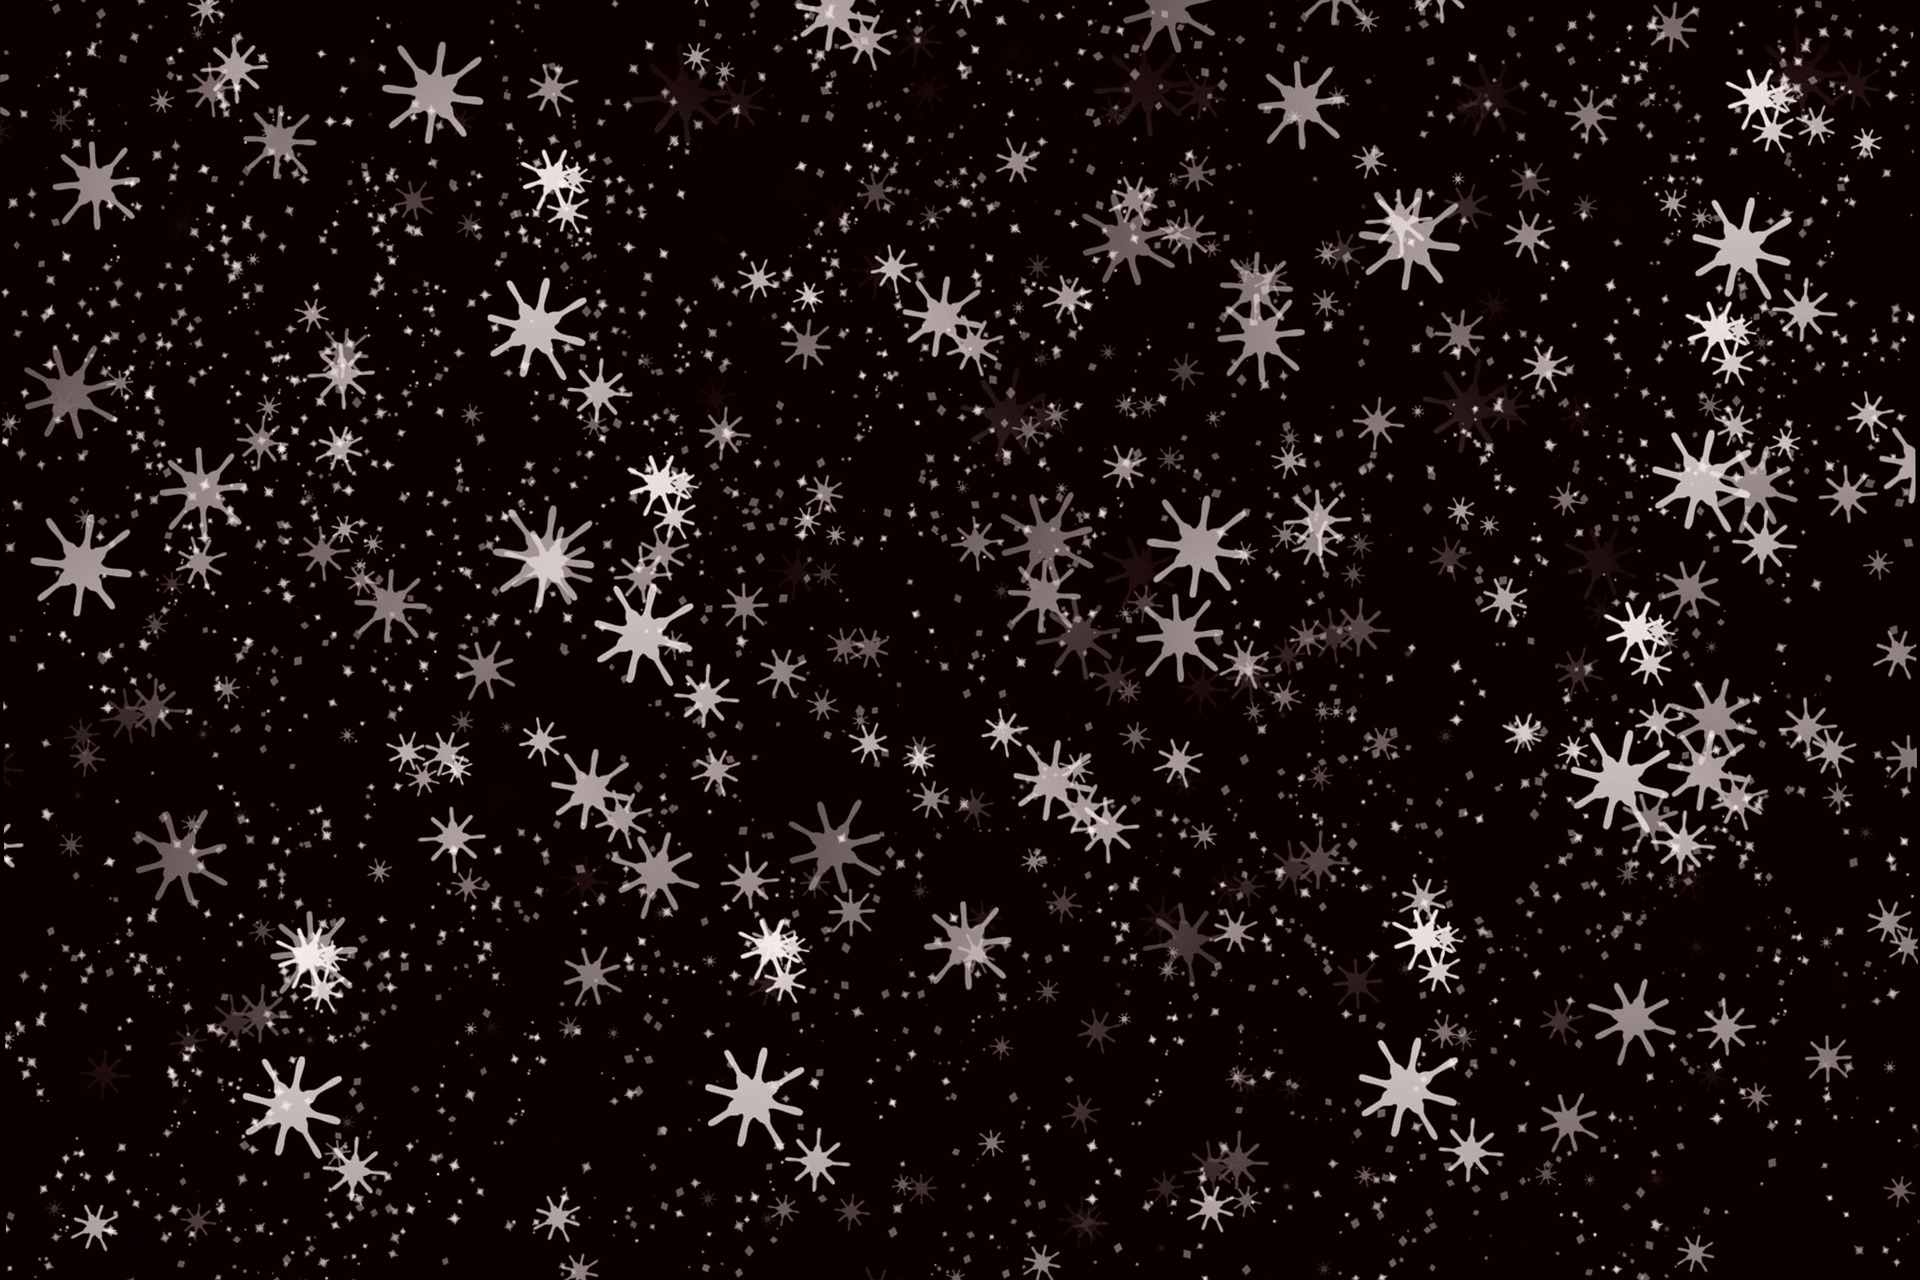 Snow Flakes Background, Christmas, Design, Flake, Snow, HQ Photo